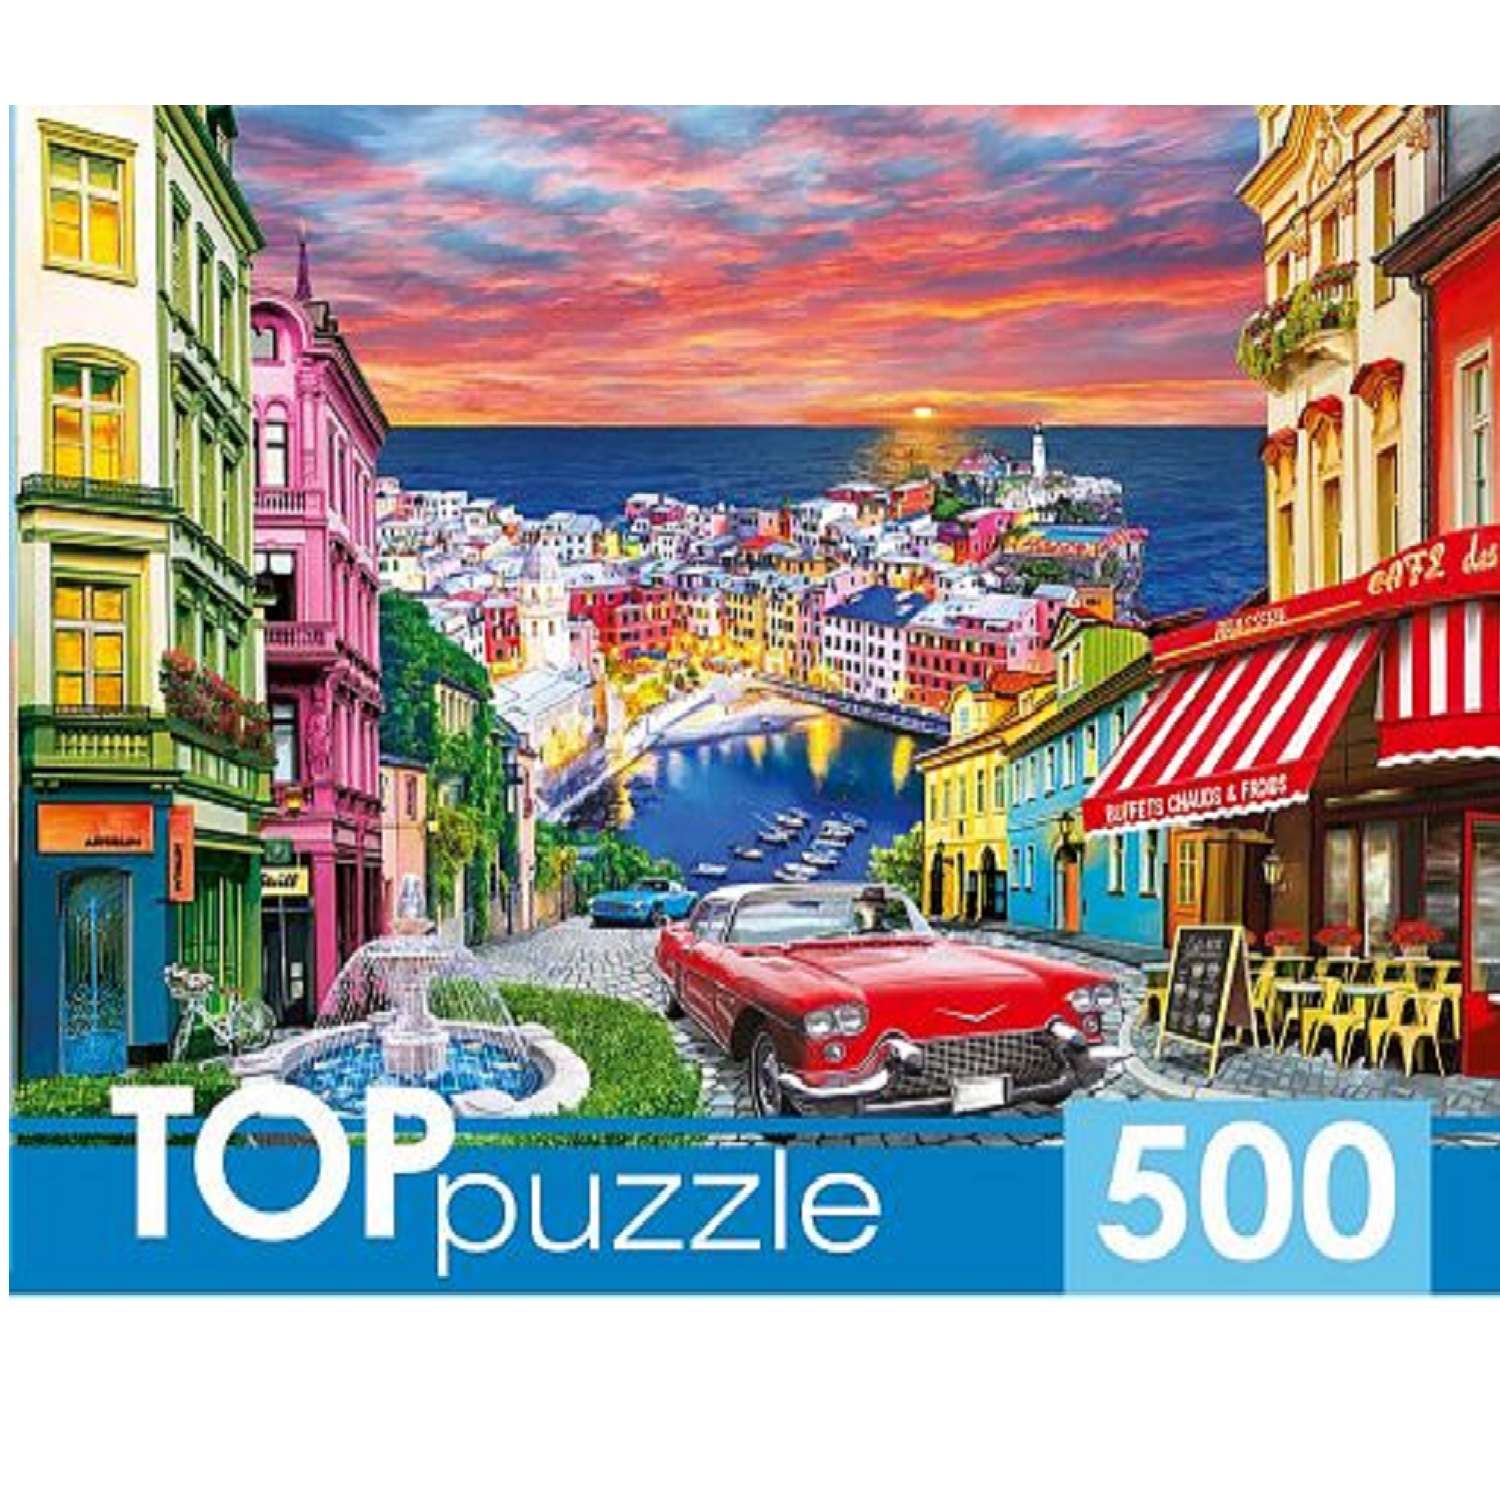 TOPpuzzle. Пазлы. Рыжий кот 500 элементов. Итальянский город у моря - фото 1